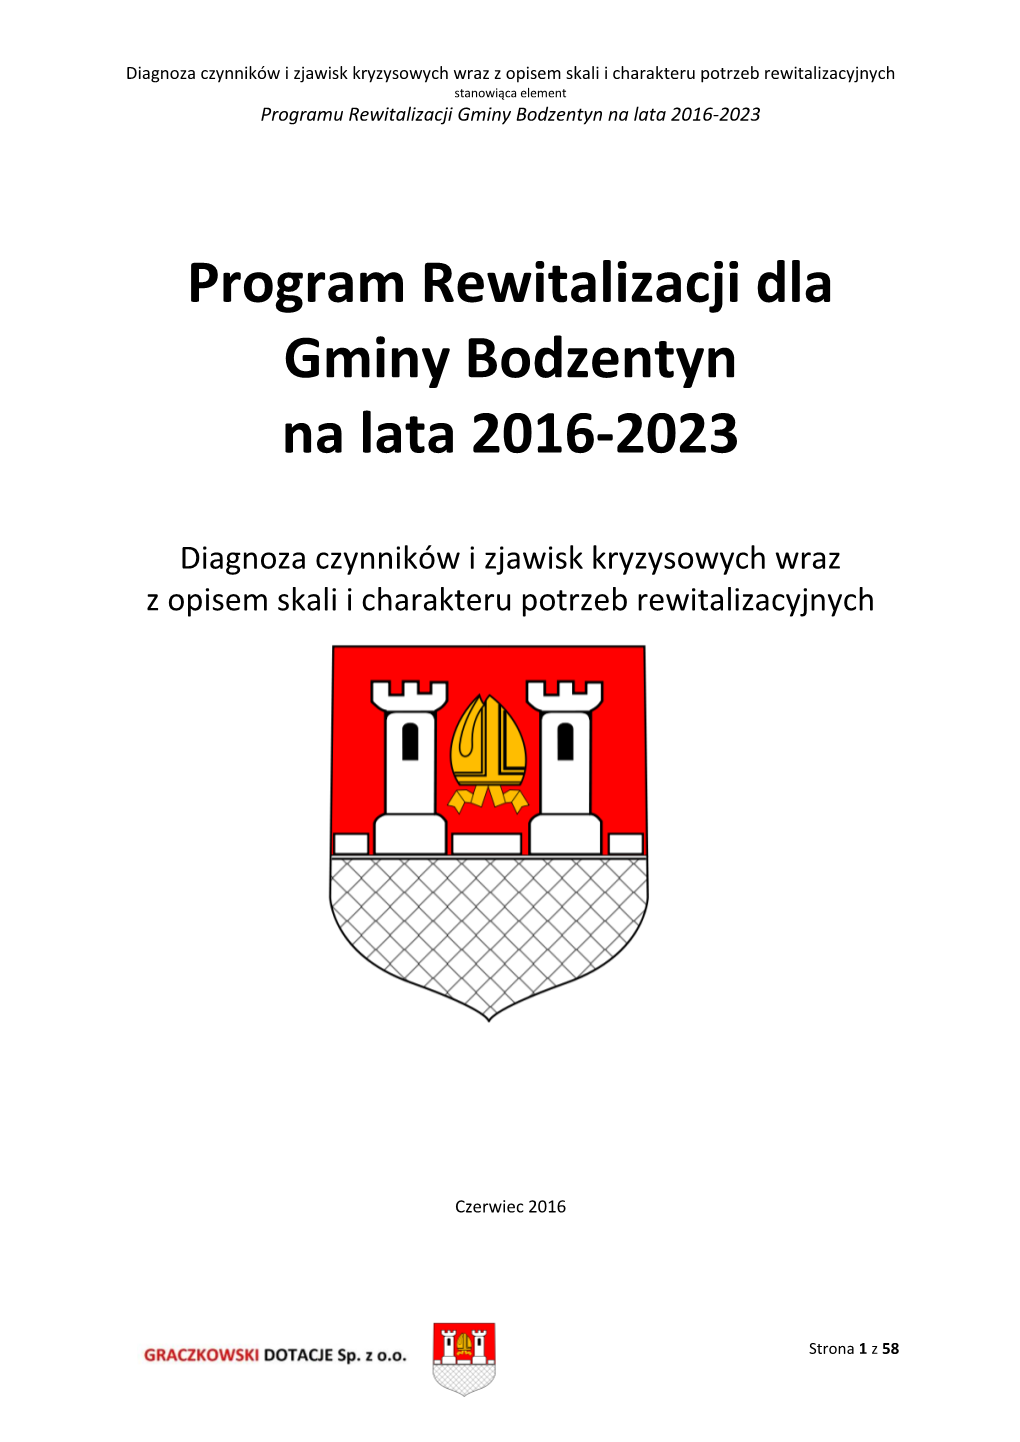 Program Rewitalizacji Dla Gminy Bodzentyn Na Lata 2016-2023